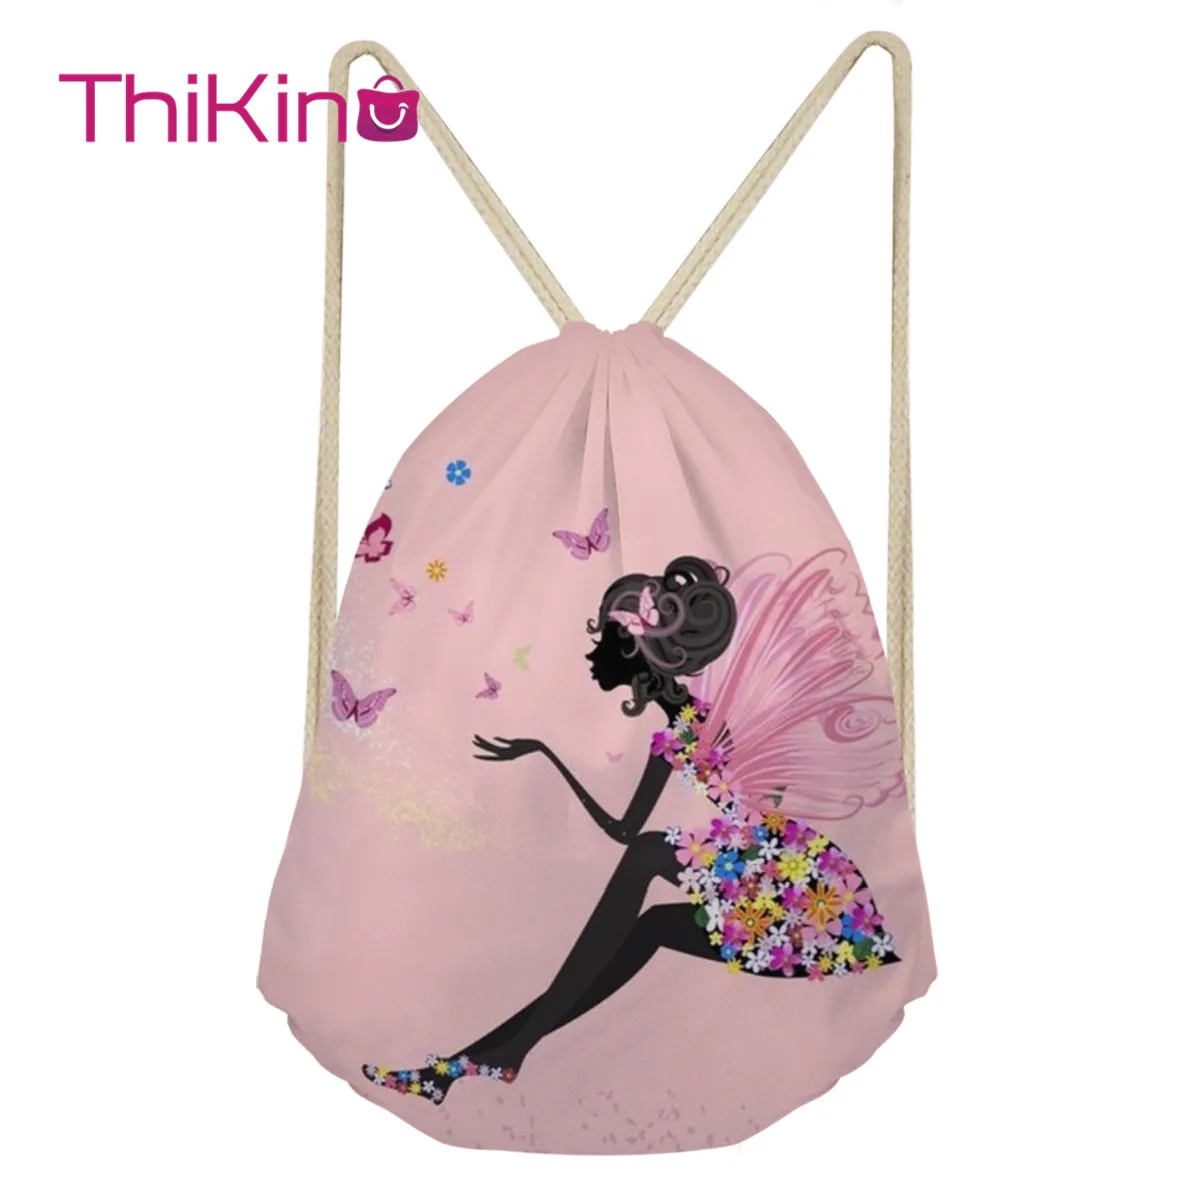 Thikin/милый Повседневный мешок на завязках для девочек, сумка для женщин и мужчин, рюкзак для путешествий для малышей, мягкая женская пляжная